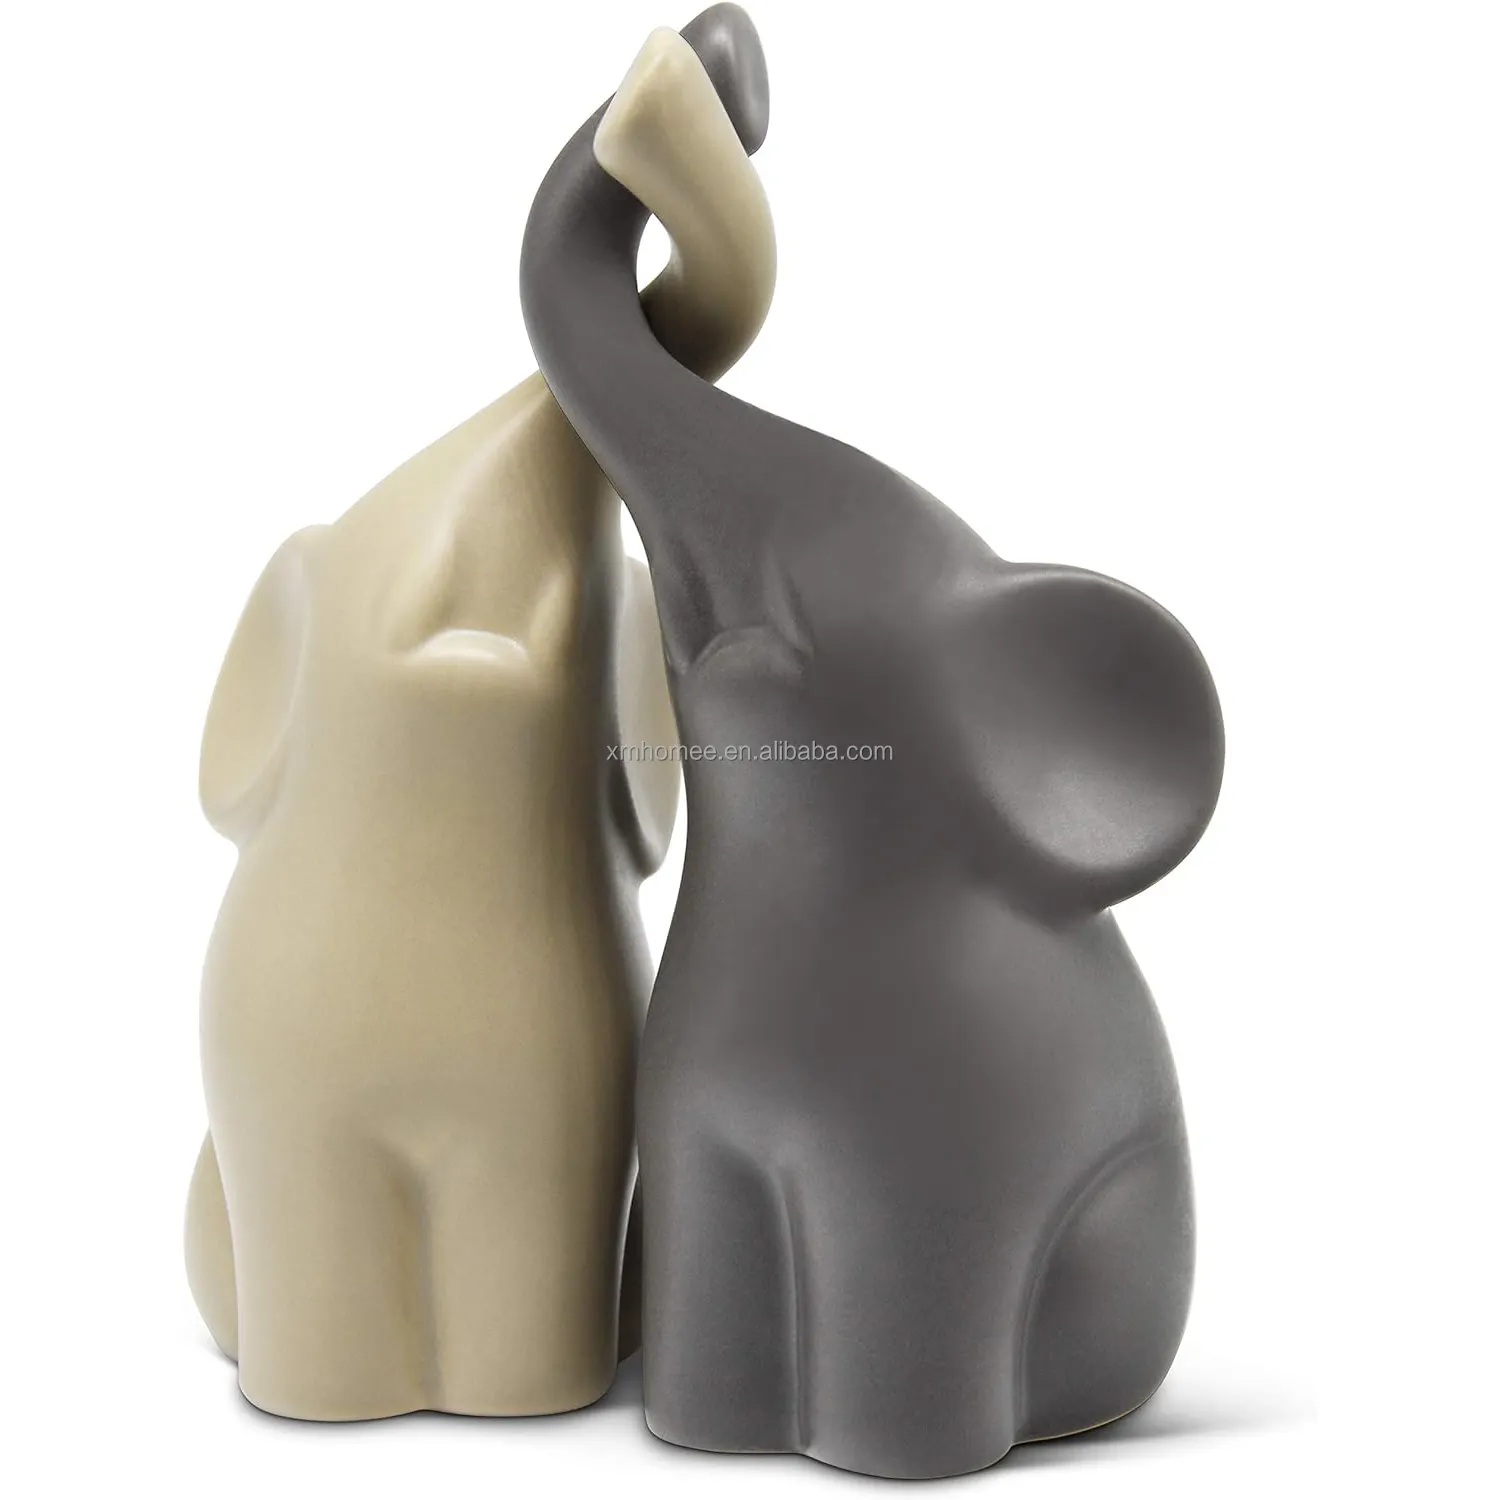 Керамический орнамент Слон в любви любящая пара слонов Современная керамическая скульптура набор статуэтки Украшение Фигурка 6,3 "высокий